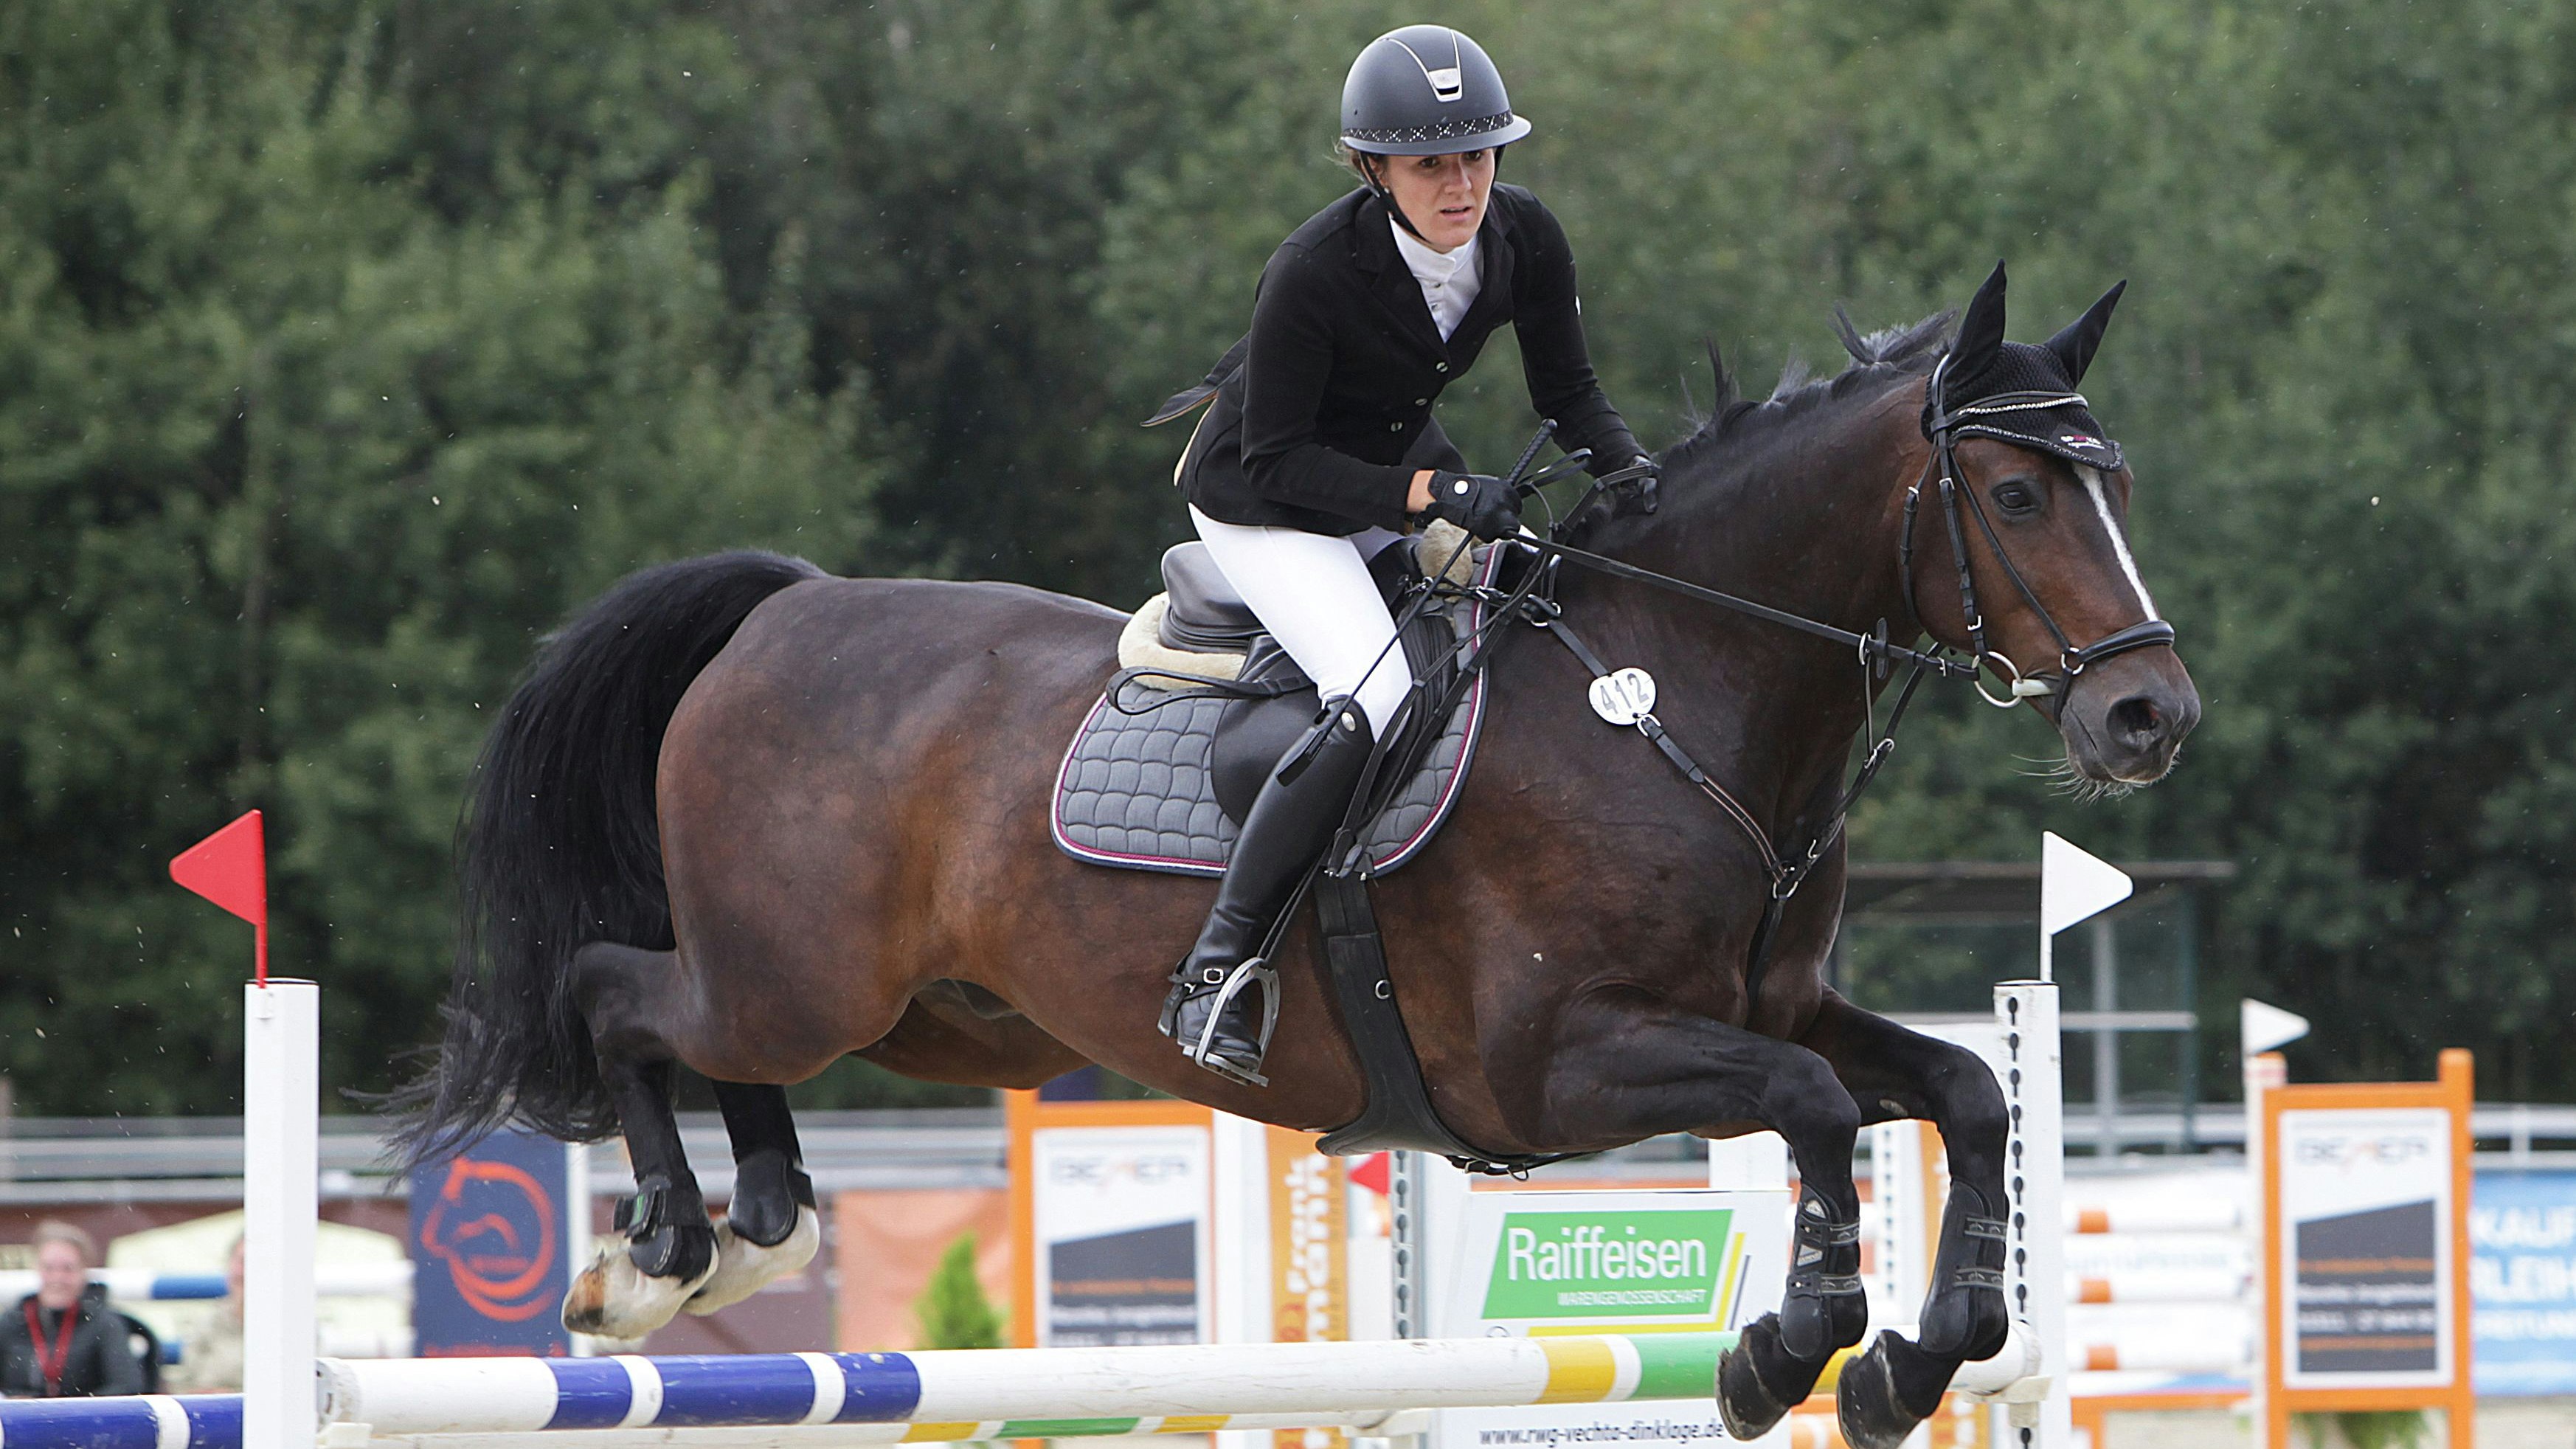 Da steht ein Pferd in der Luft: Eine Szene vom letztjährigen Turnier des Reitervereins Vechta. Foto: Schikora